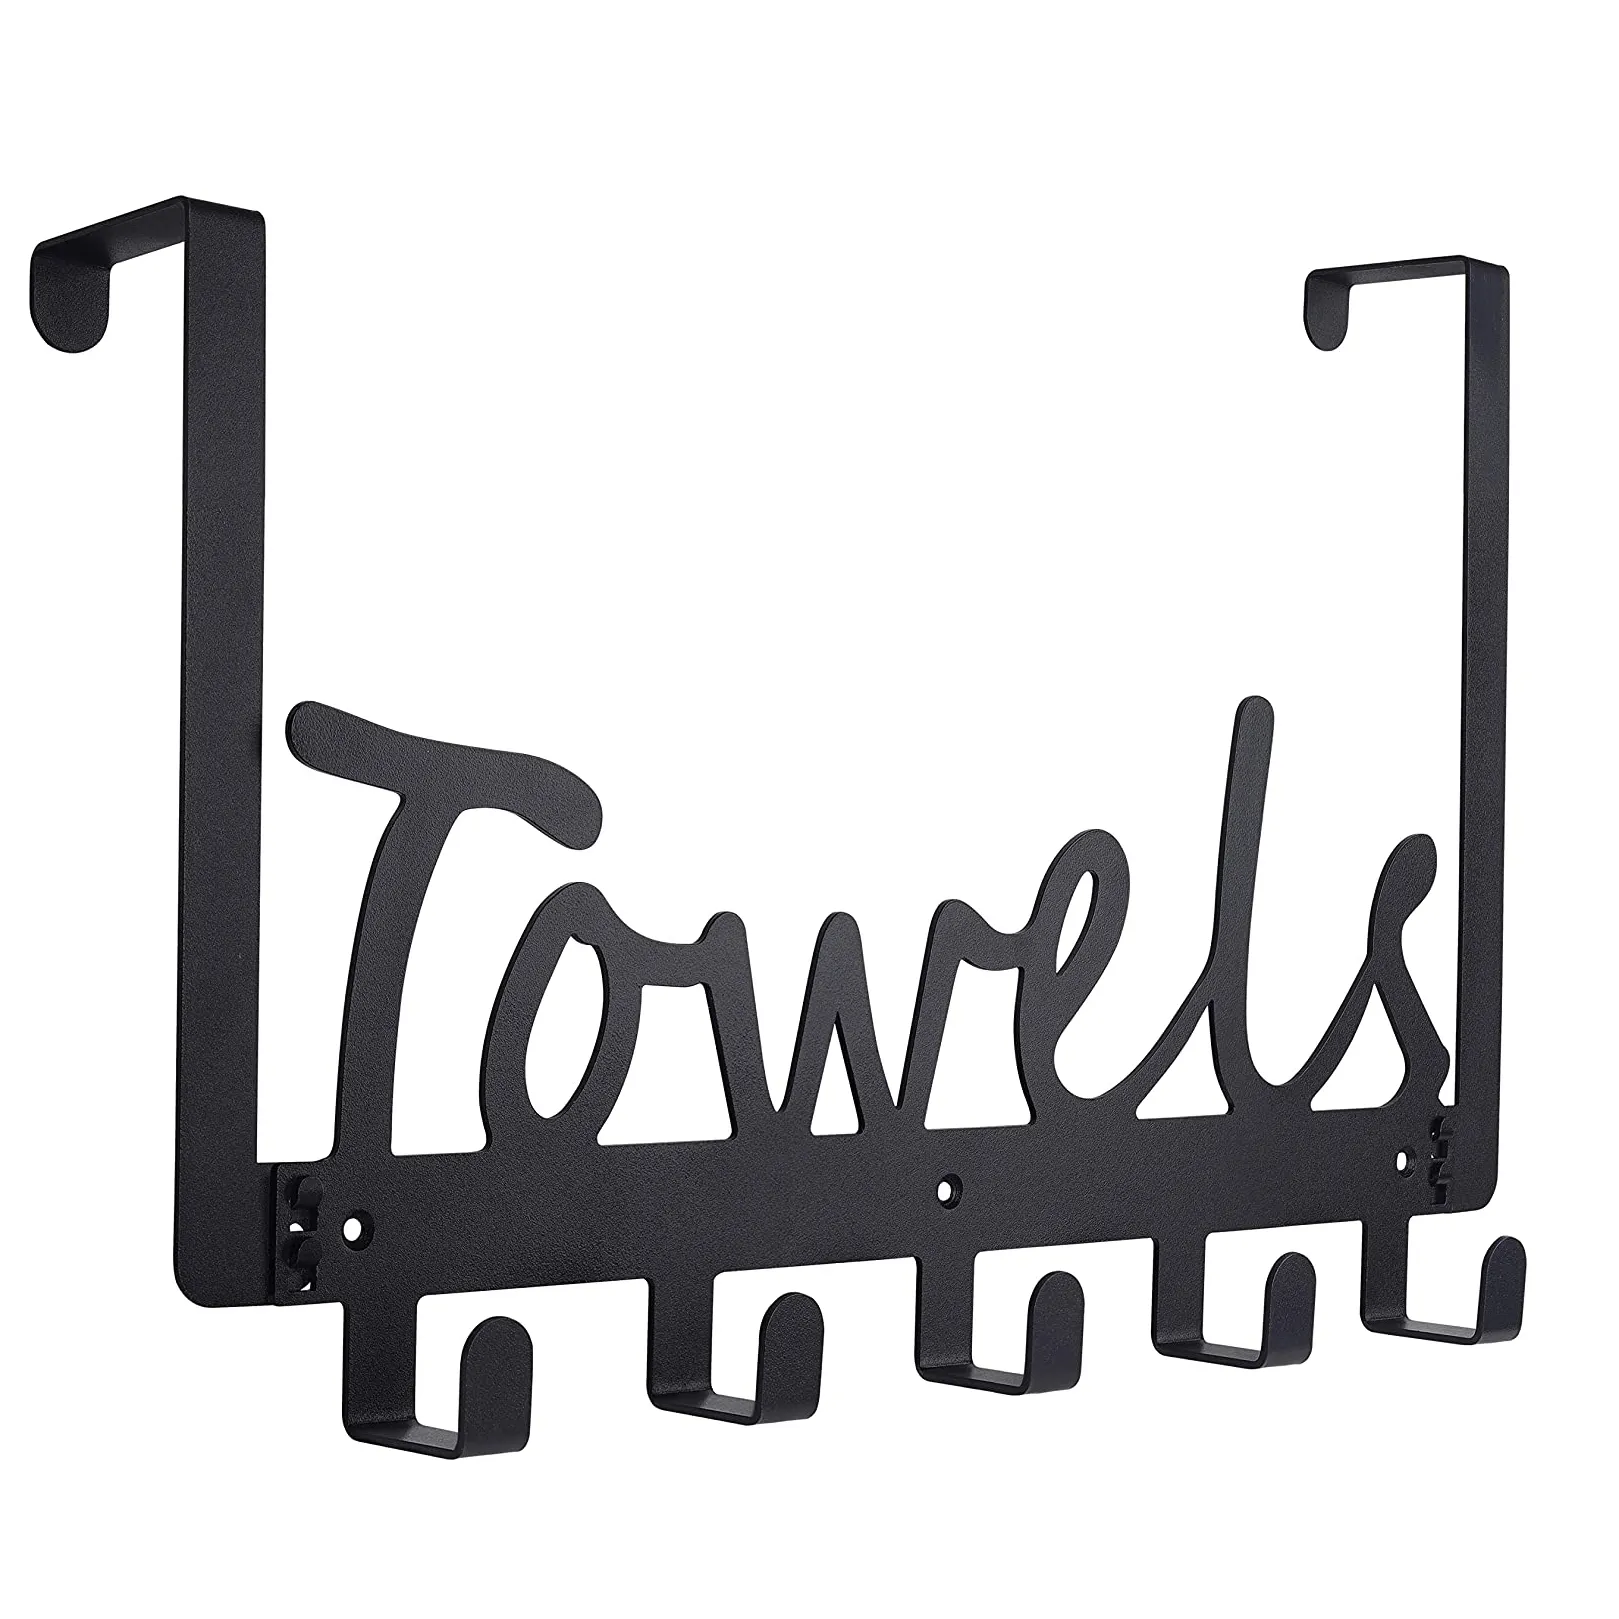 Crochets de porte-serviettes organisateur robuste sur les armoires de salle de bains crochets de porte pour serviettes